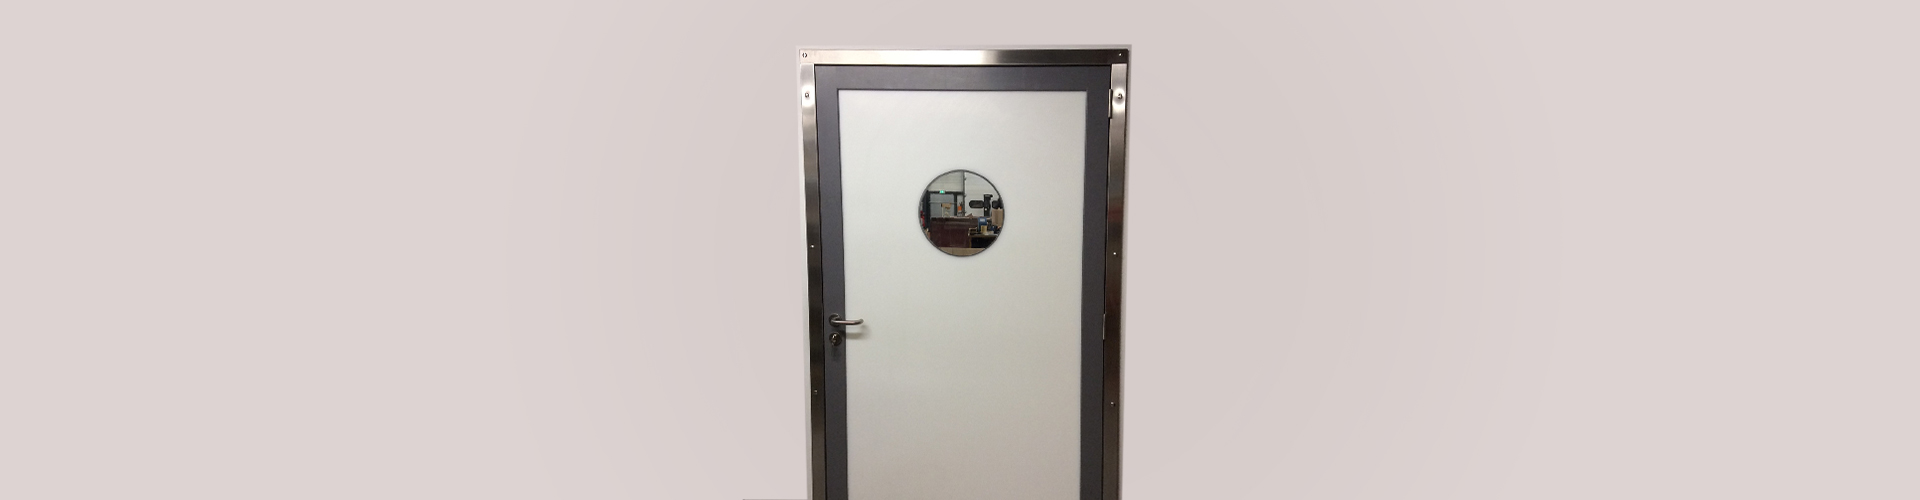 service door for food industry